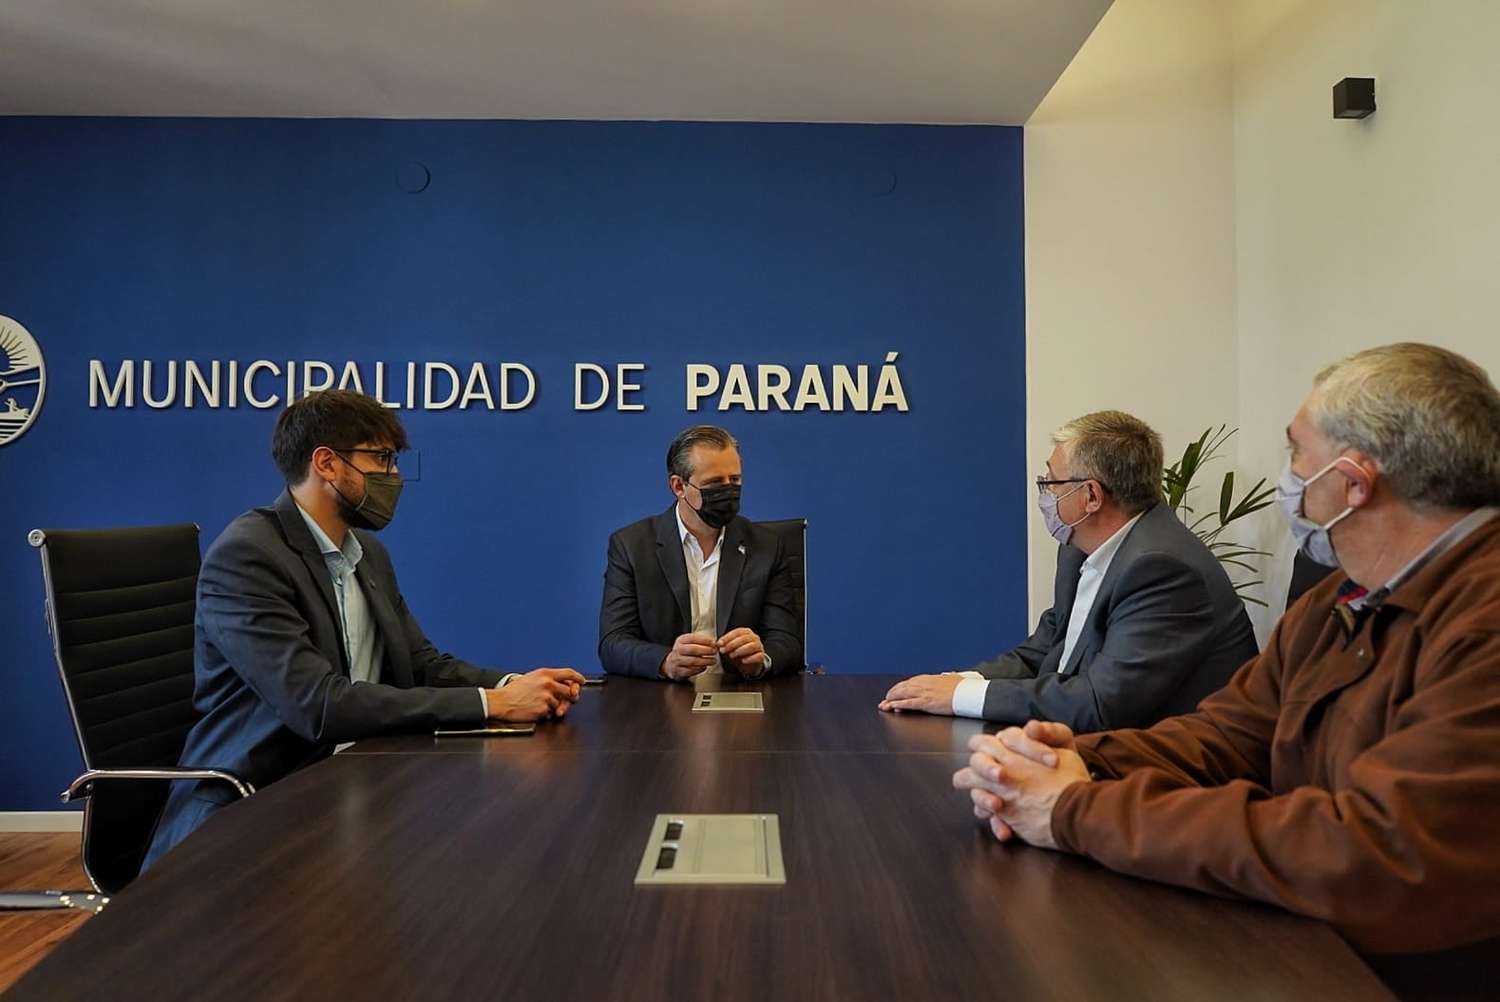 130 abogados nóveles se sumaron al Municipio de Paraná para modernizar la administración